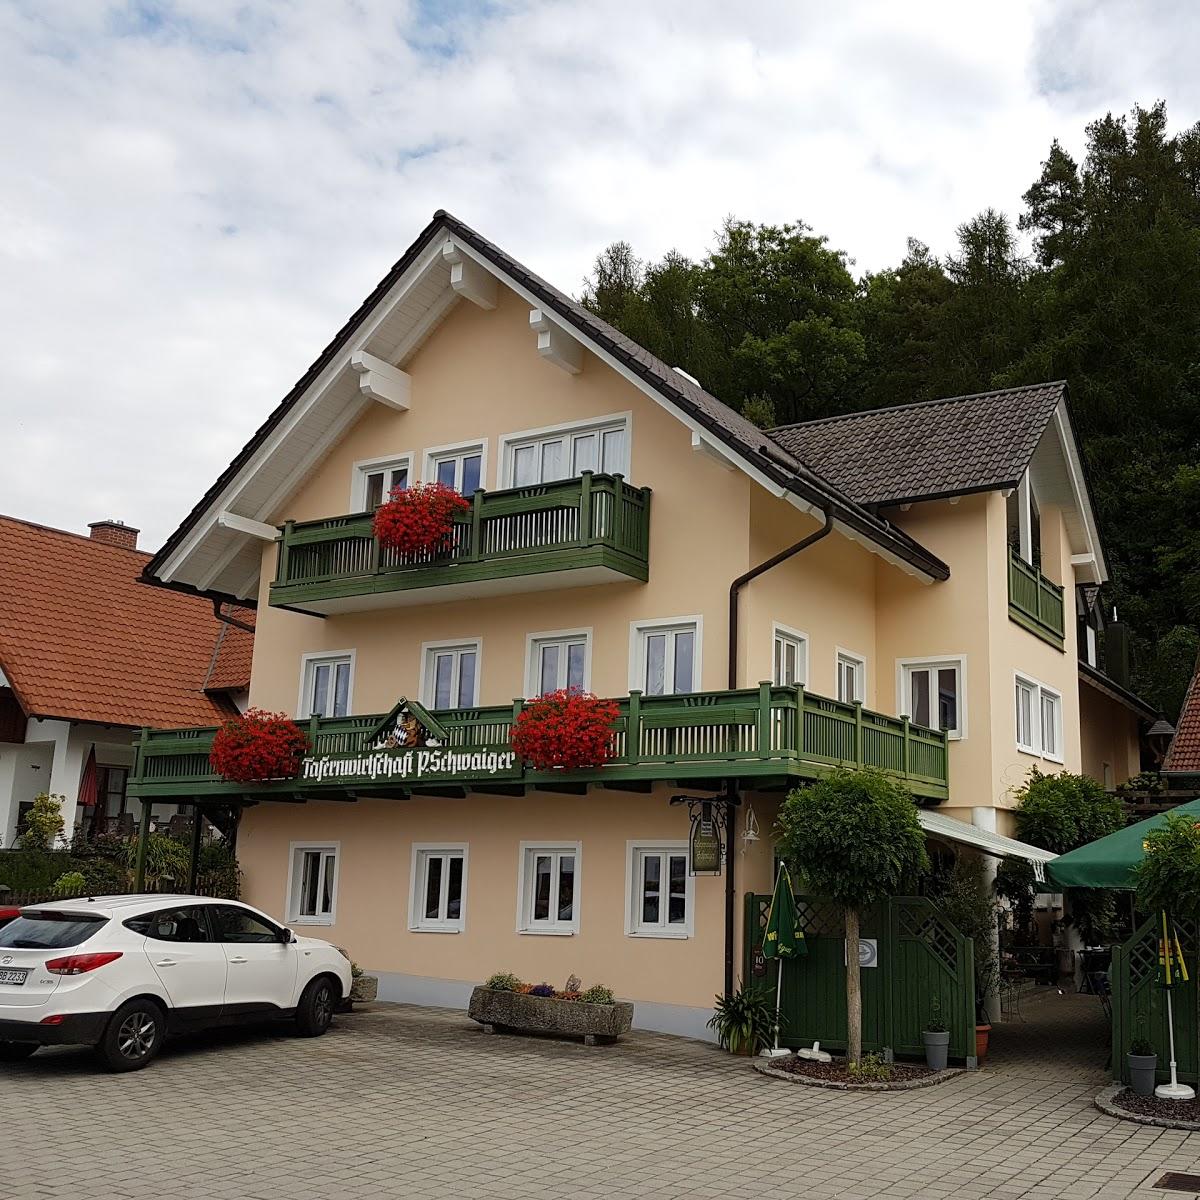 Restaurant "Tafernwirtschaft Schwaiger Eugenbach" in Altdorf